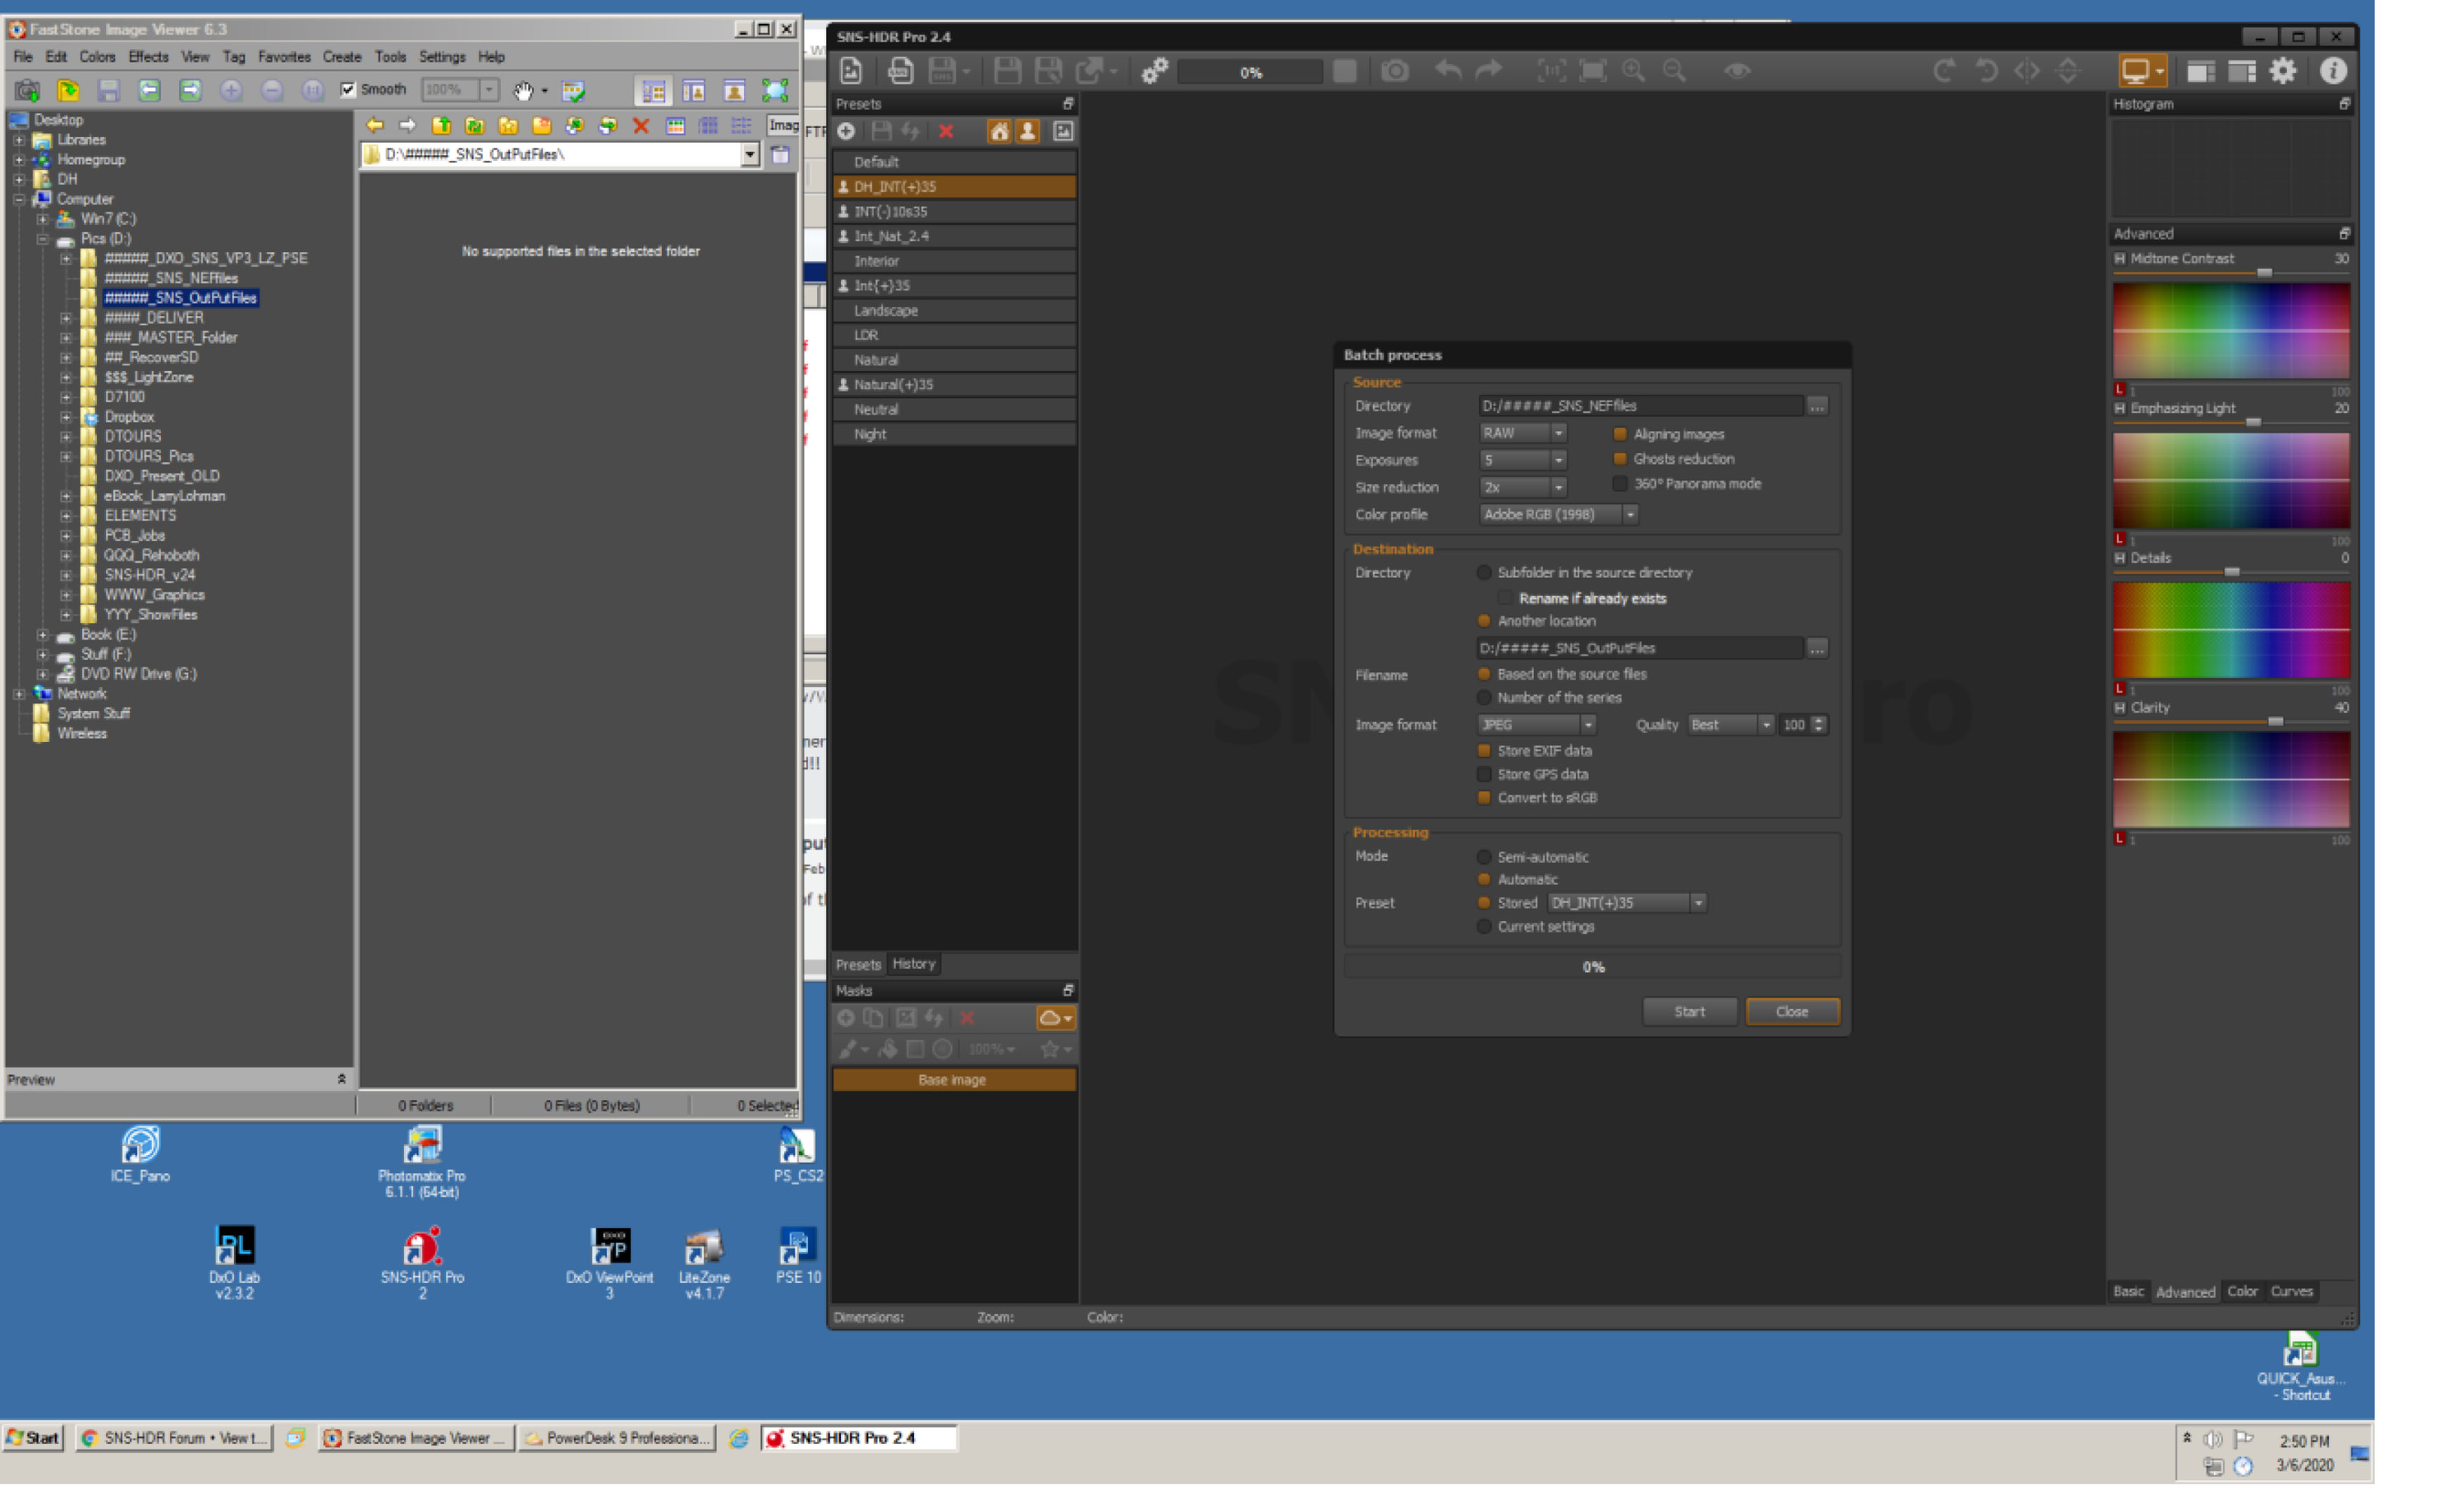 SNS_Screen+OutputFolder.jpg